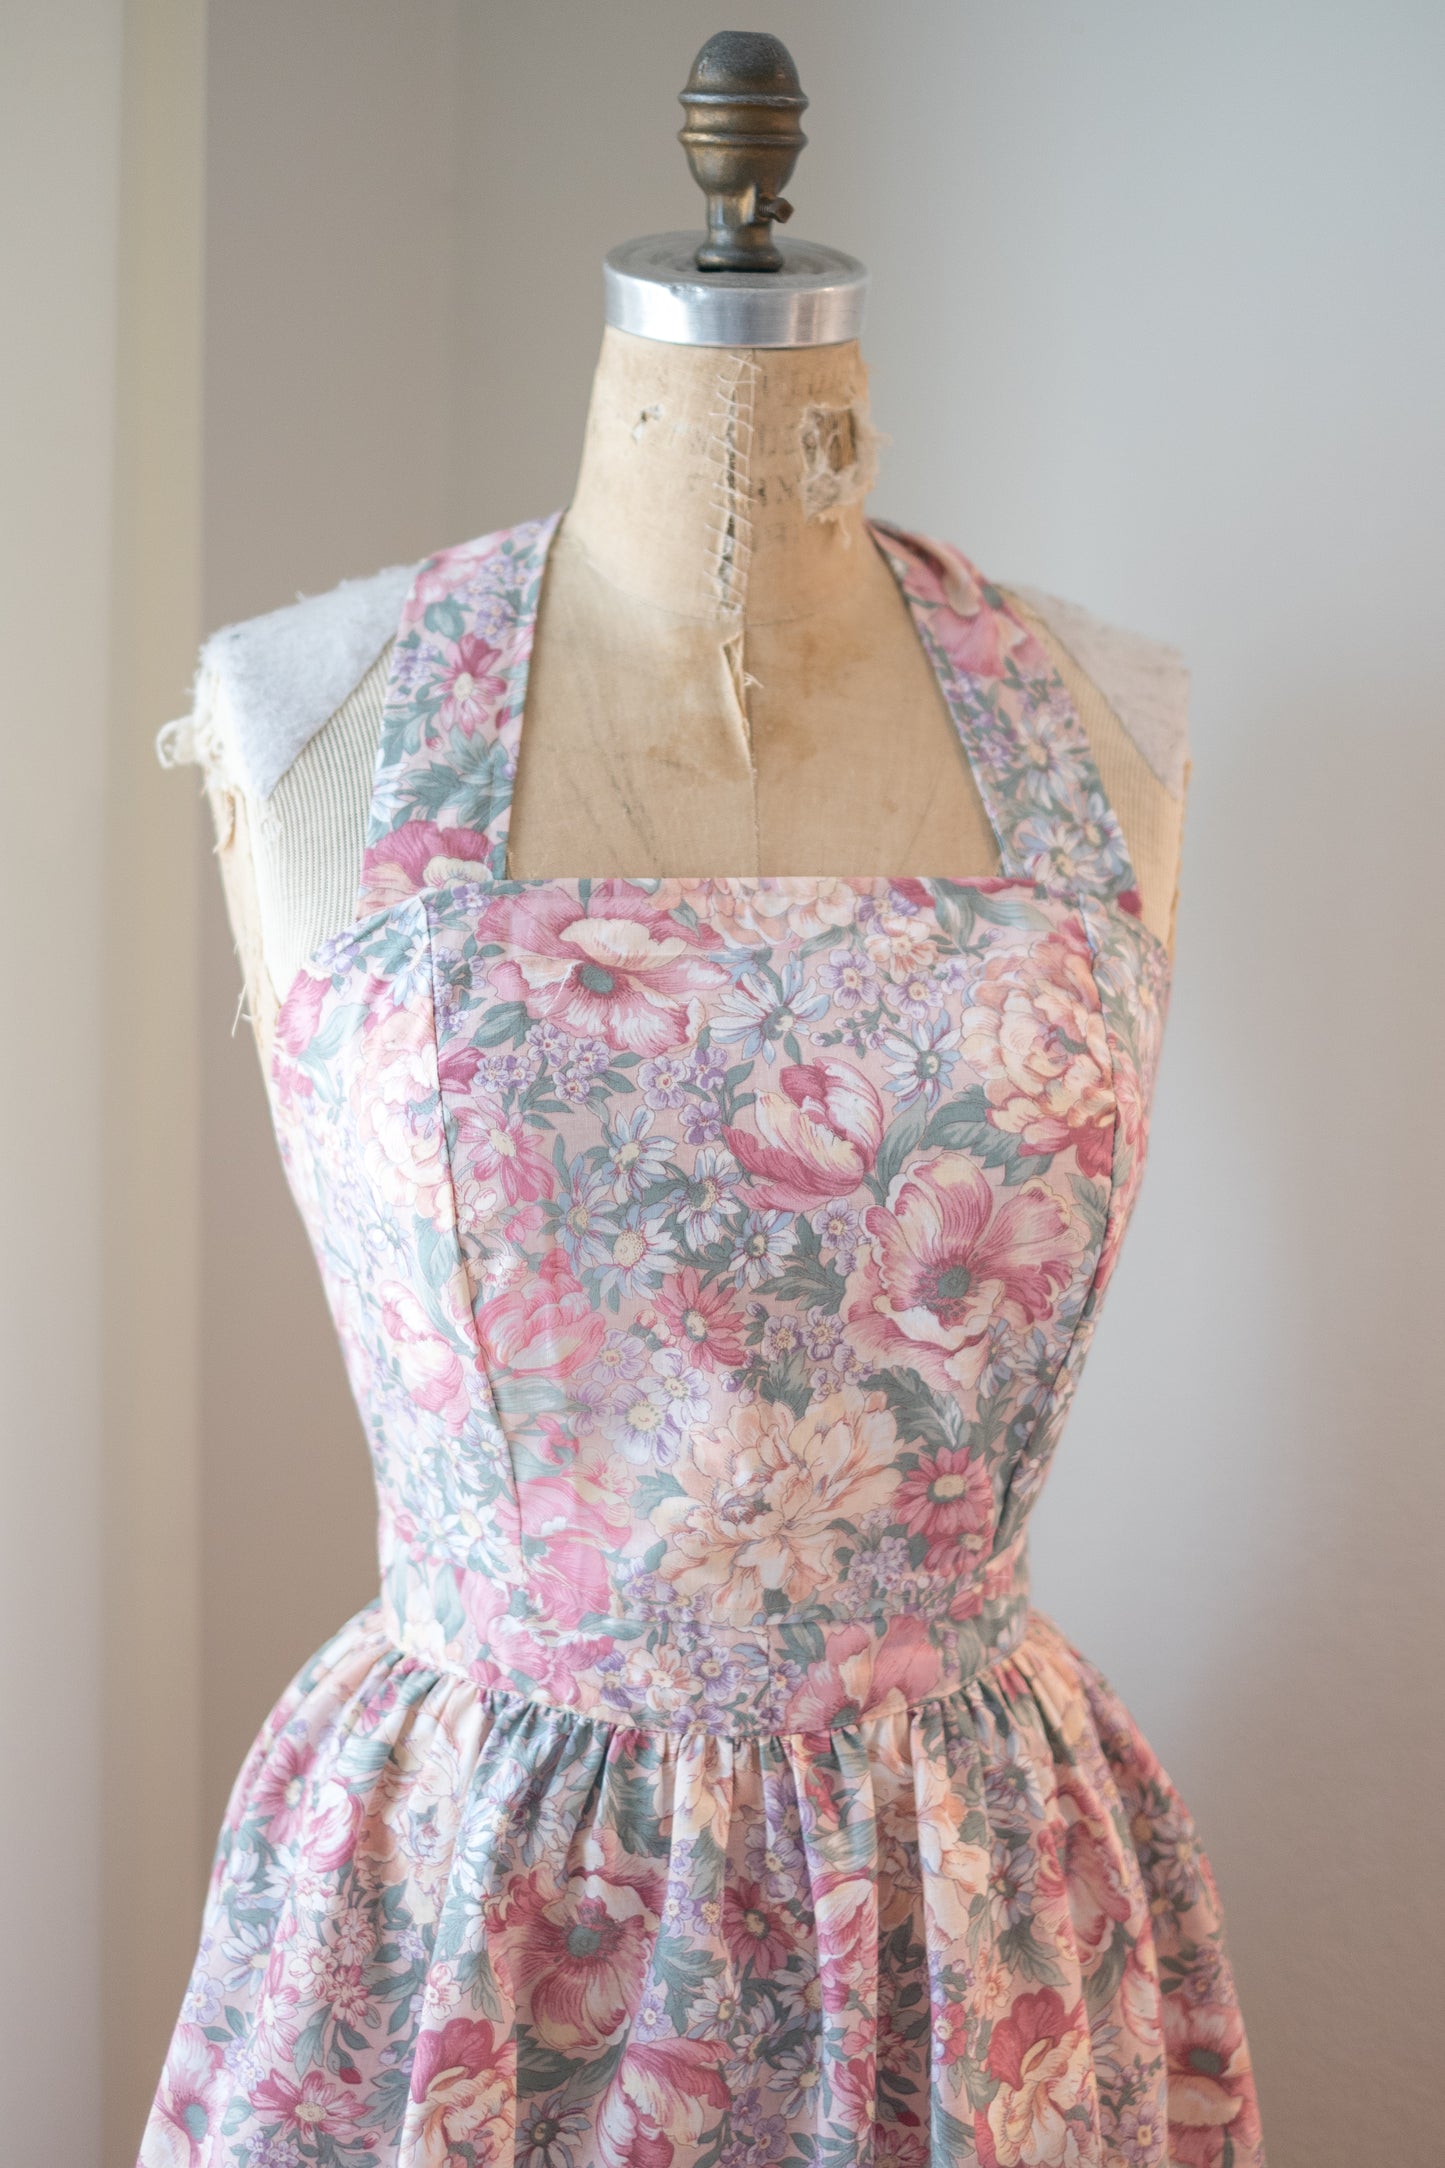 Handmade vintage floral apron set - pink fields